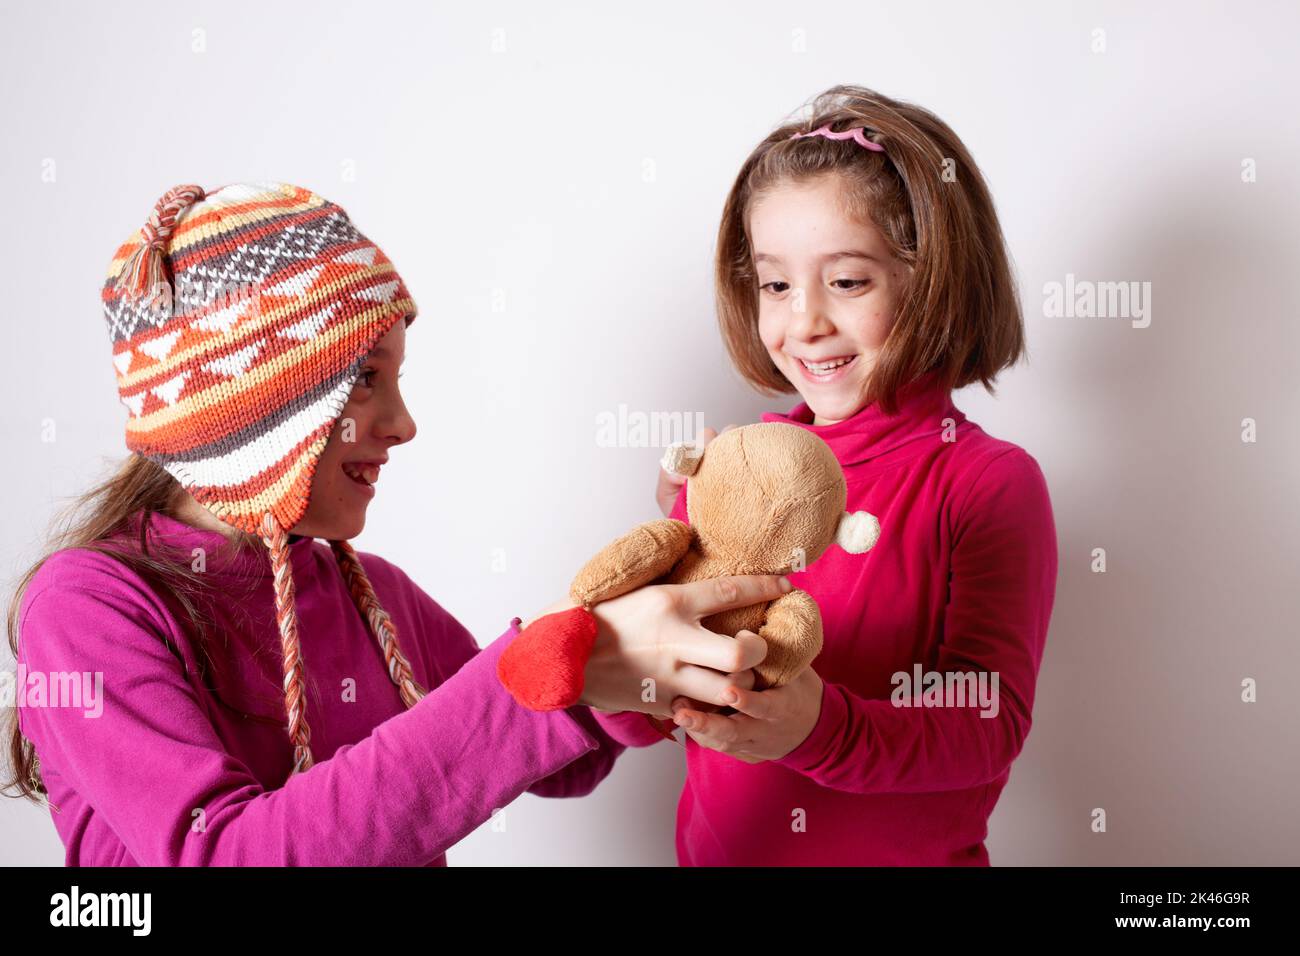 Petite fille donnant son jouet d'ours en peluche à sa sœur plus jeune. Mignonne fille donnant un cadeau à sa sœur. Enfant fille partageant un jouet avec un ami Banque D'Images